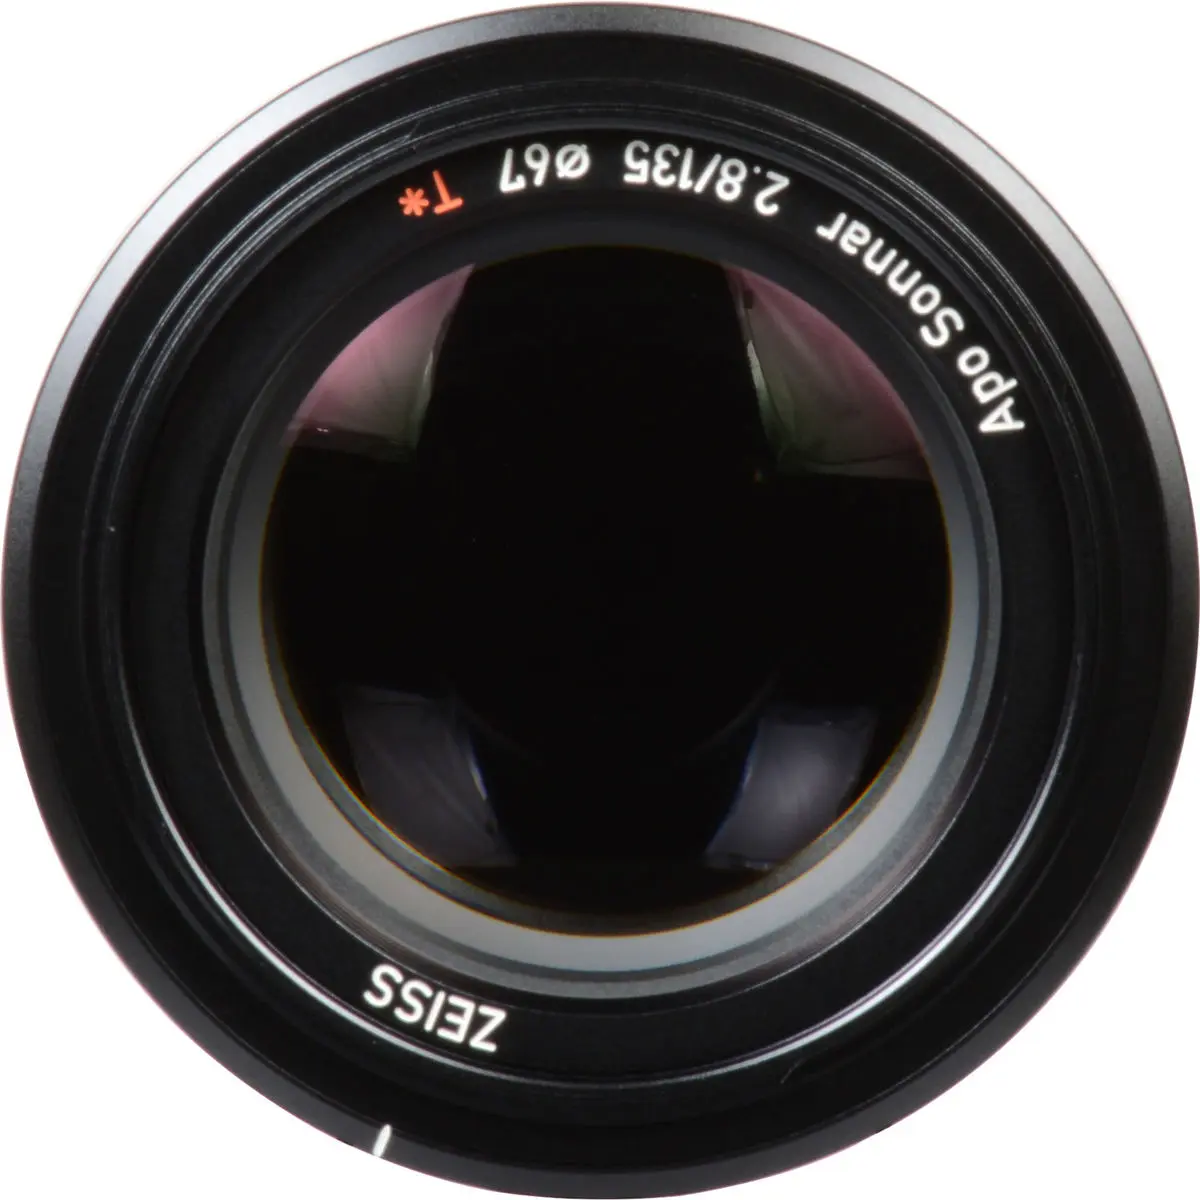 14. Carl Zeiss Batis 135mm F2.8 for Sony E mount Lens